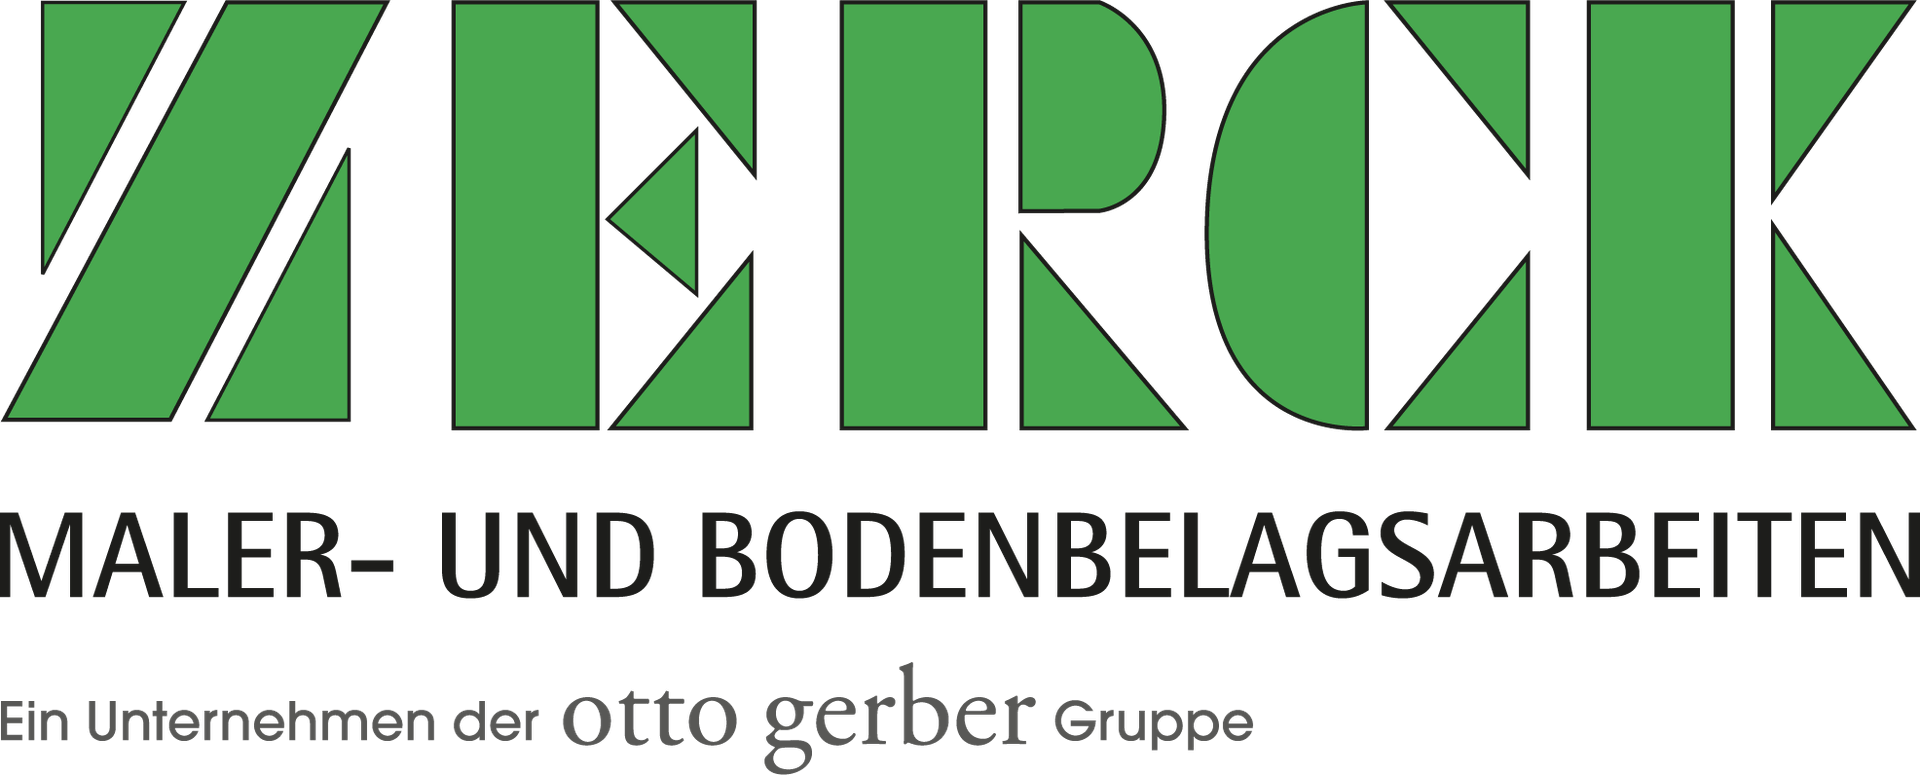 Zerck Logo